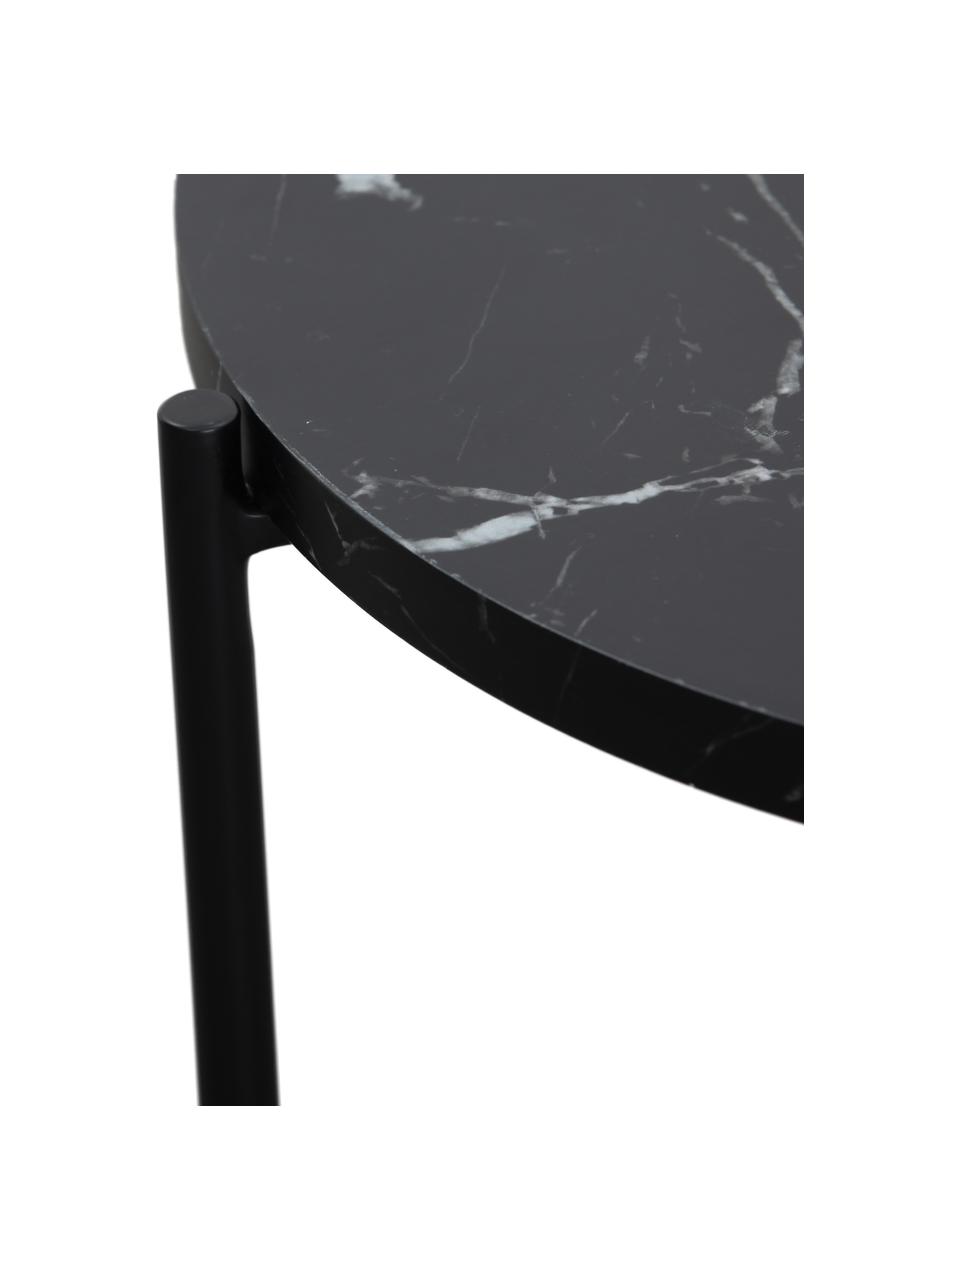 Odkládací stolek v mramorovém vzhledu Fria, Deska stolu: matná černá, mramorovaná, rám: matná černá, Ø 45 cm, V 46 cm